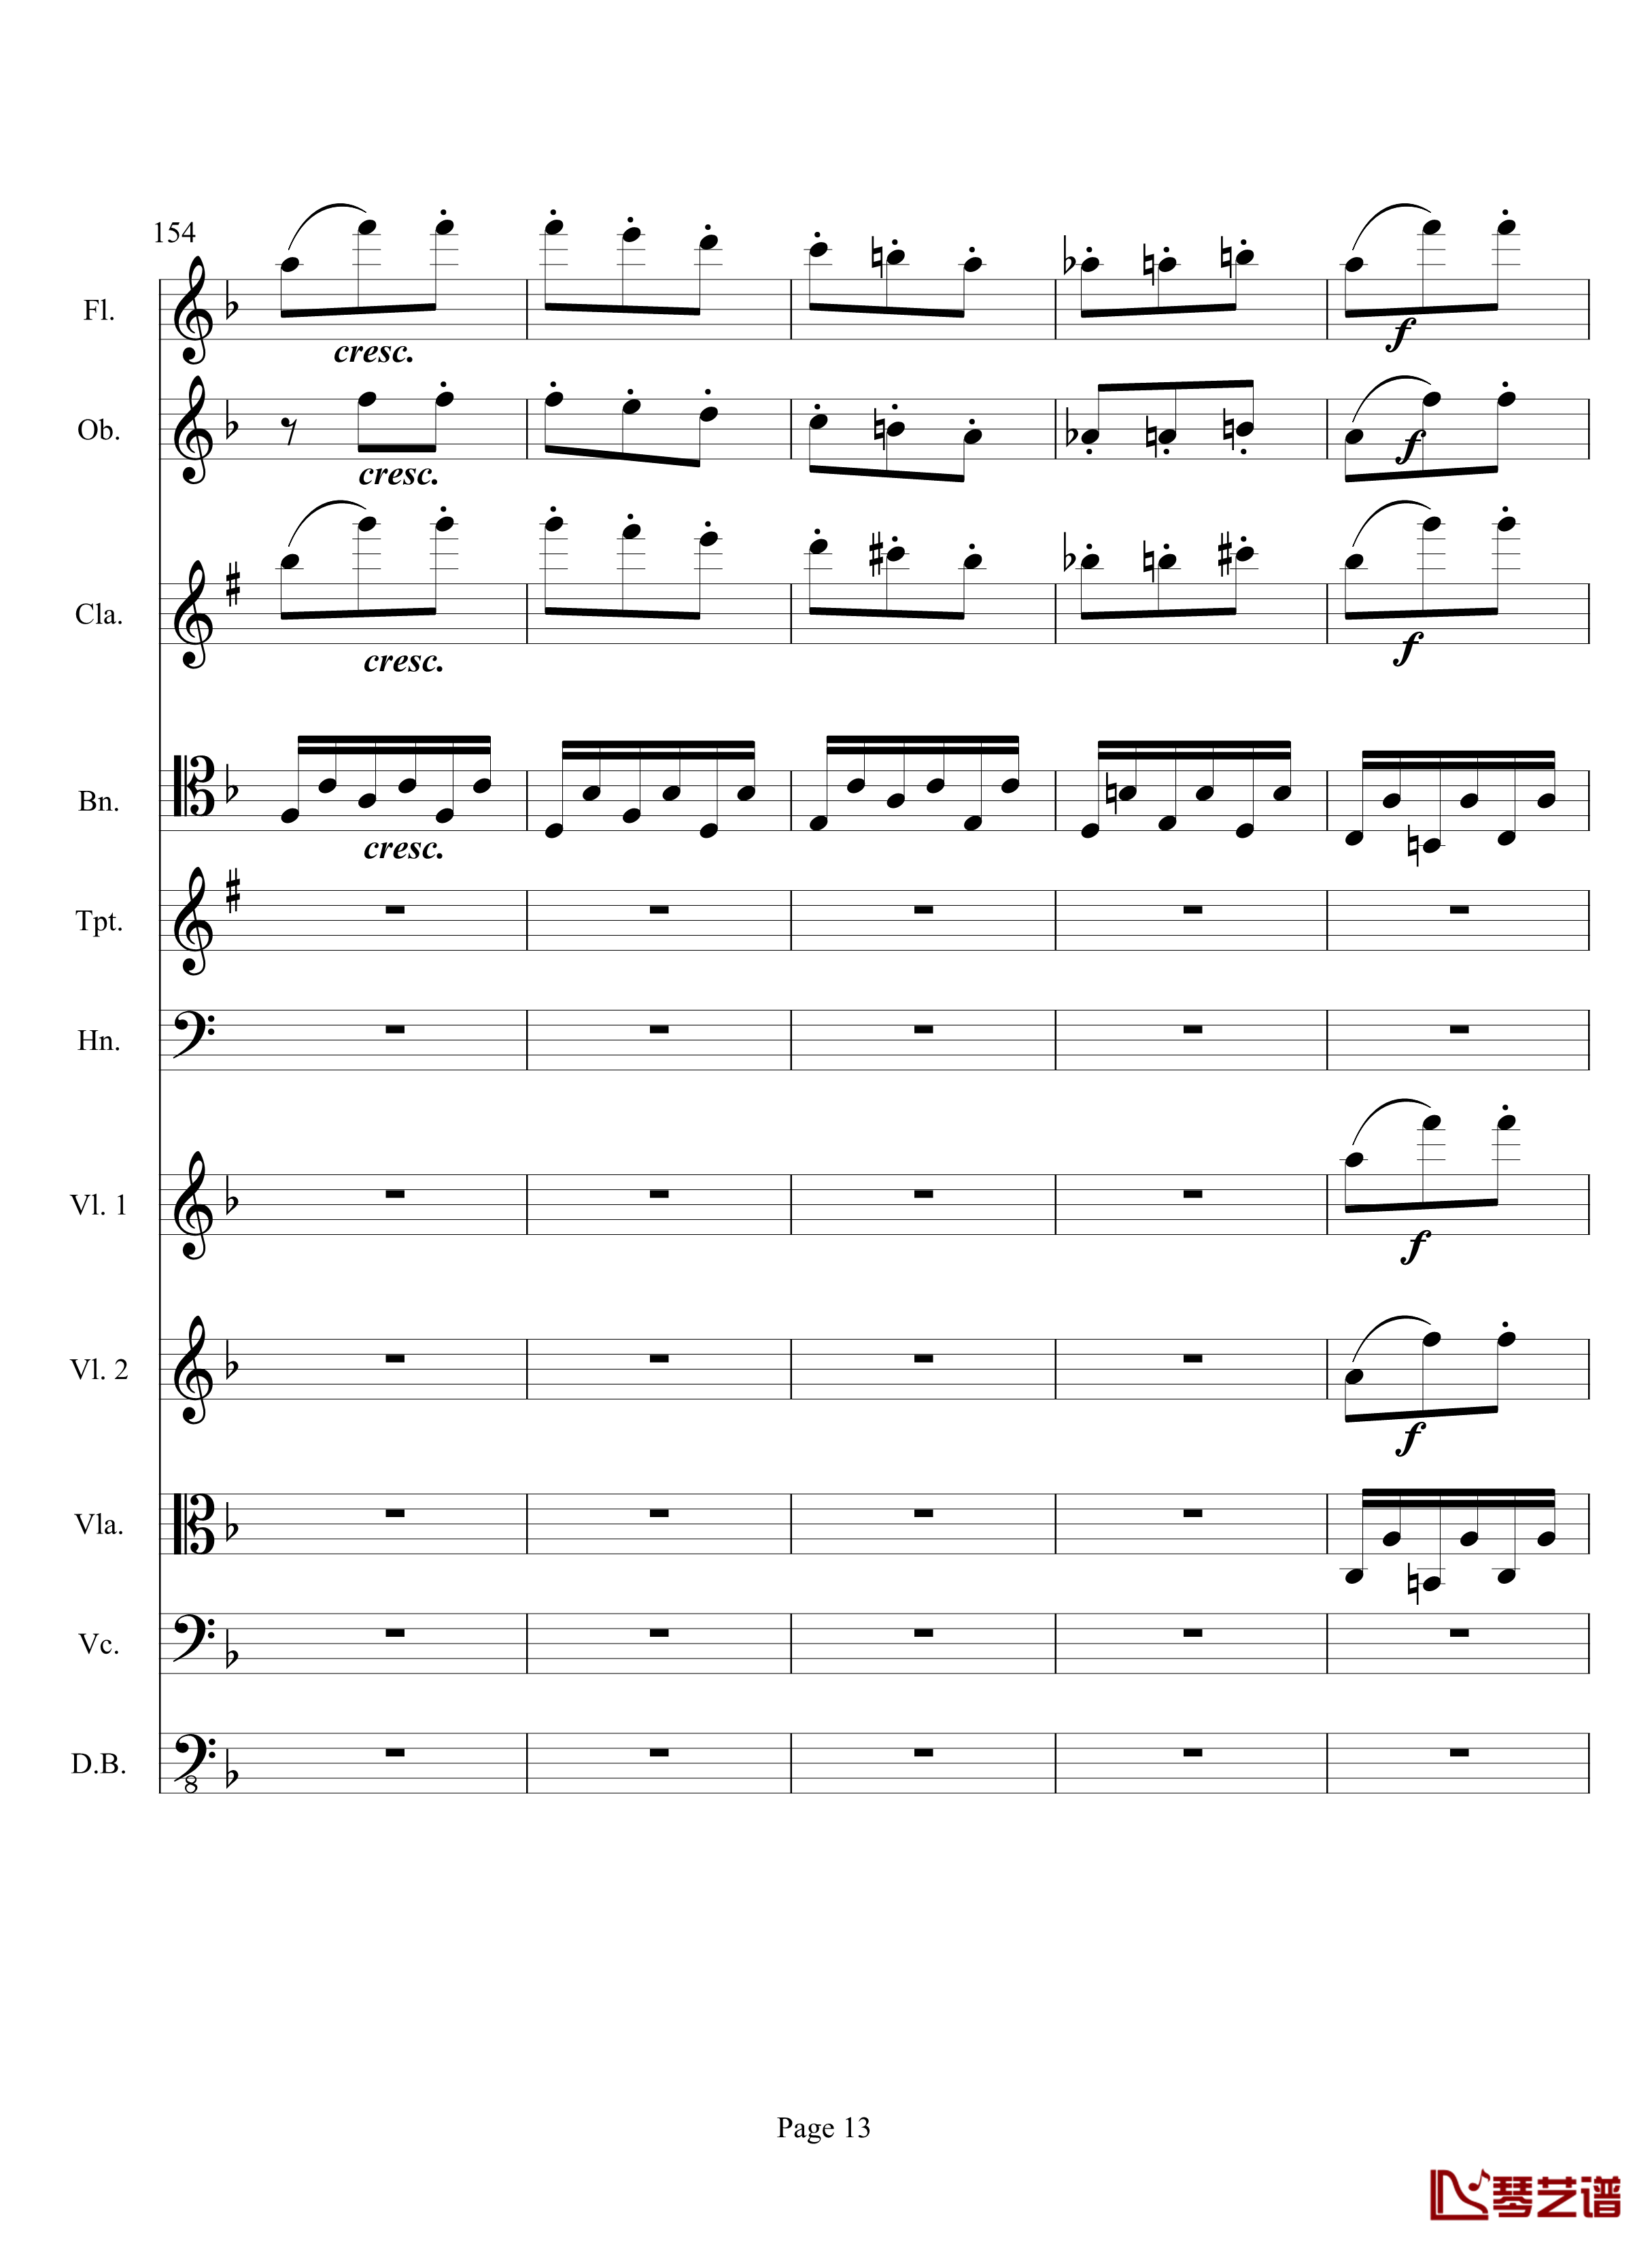 奏鸣曲之交响钢琴谱-第17首-Ⅲ-贝多芬-beethoven13